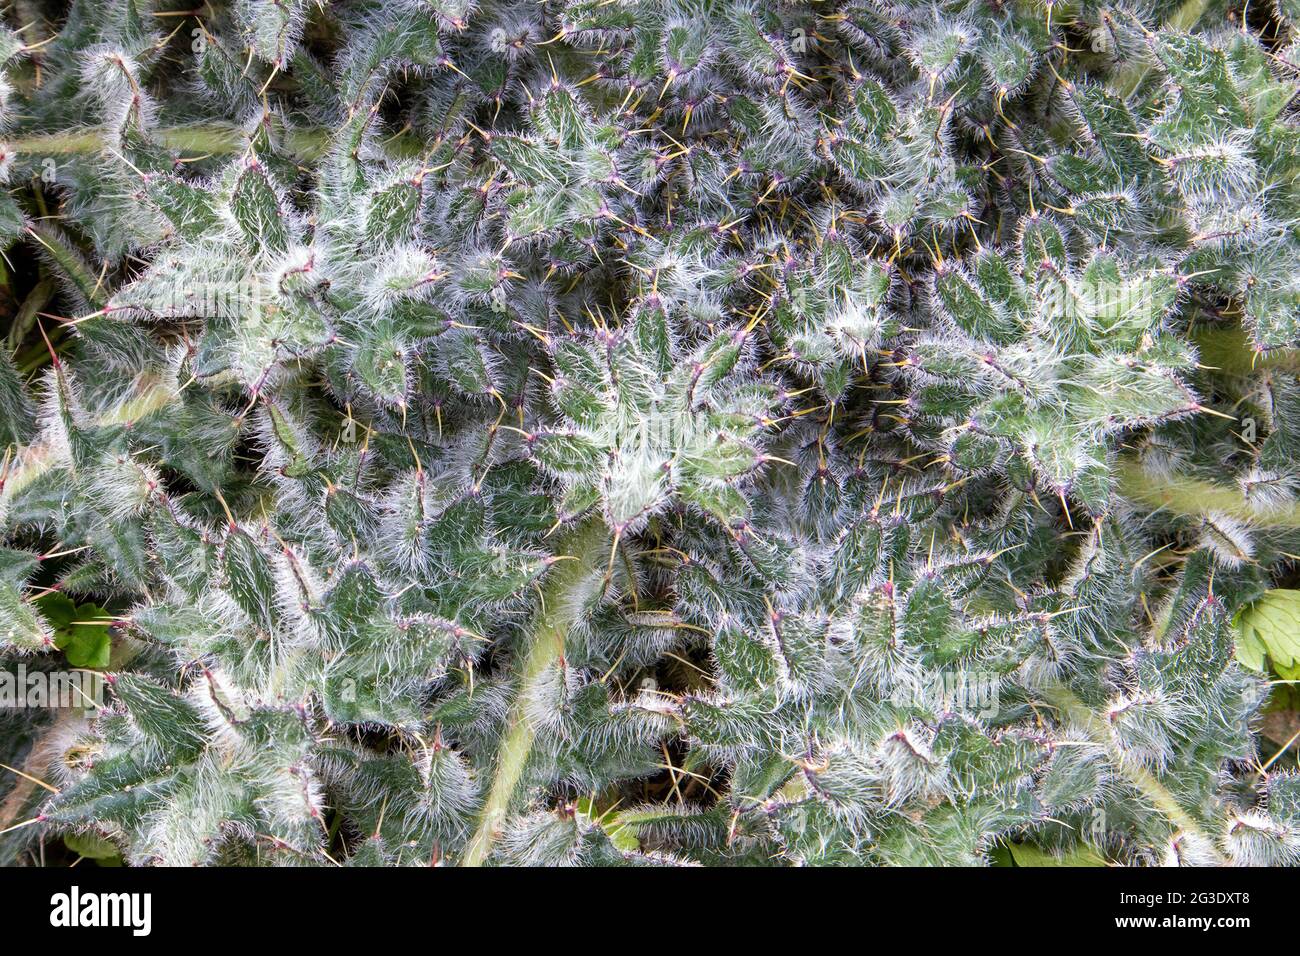 Rosette de planta de estepa espinosa joven Cirsium arvense o cardo, una especie de maleza Foto de stock